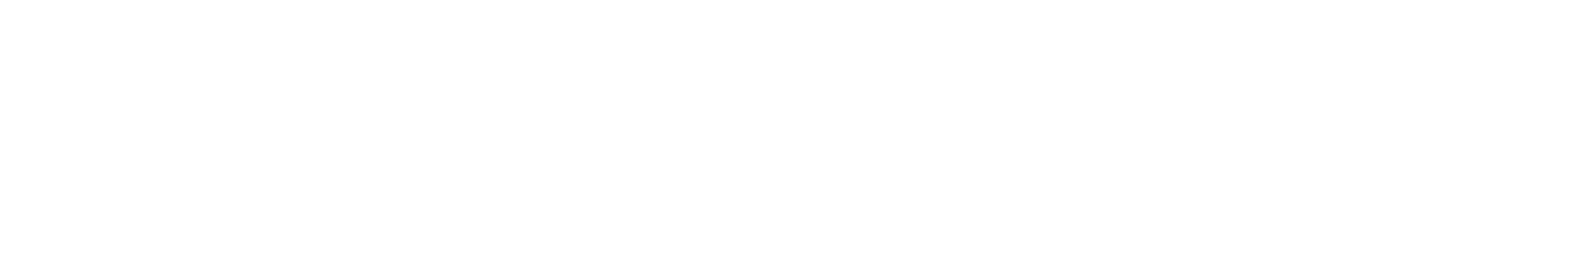 W. P. Carey logo grand pour les fonds sombres (PNG transparent)